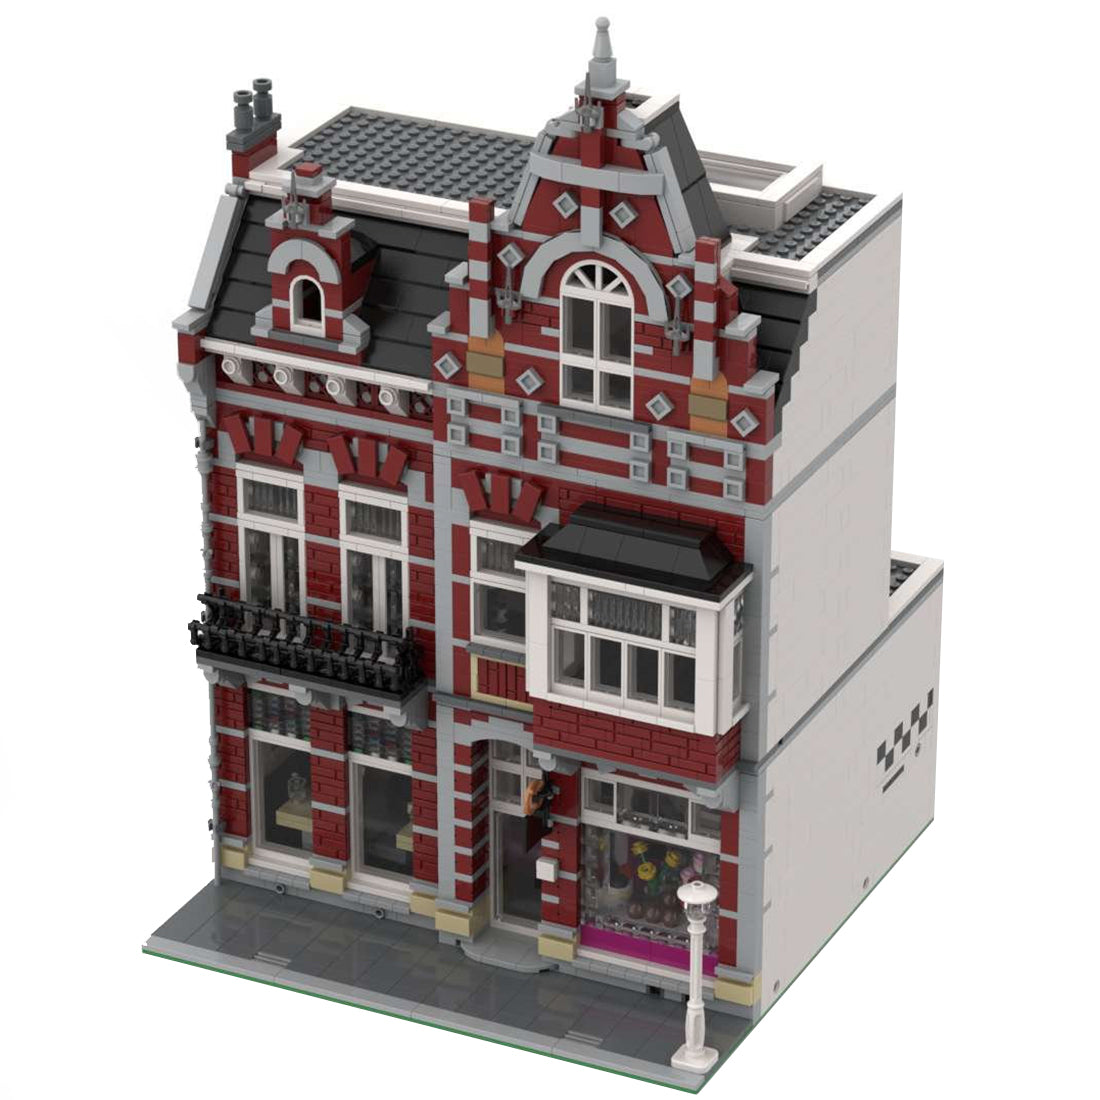 MOC-100704 Dutch Pastry Shop Modular Building